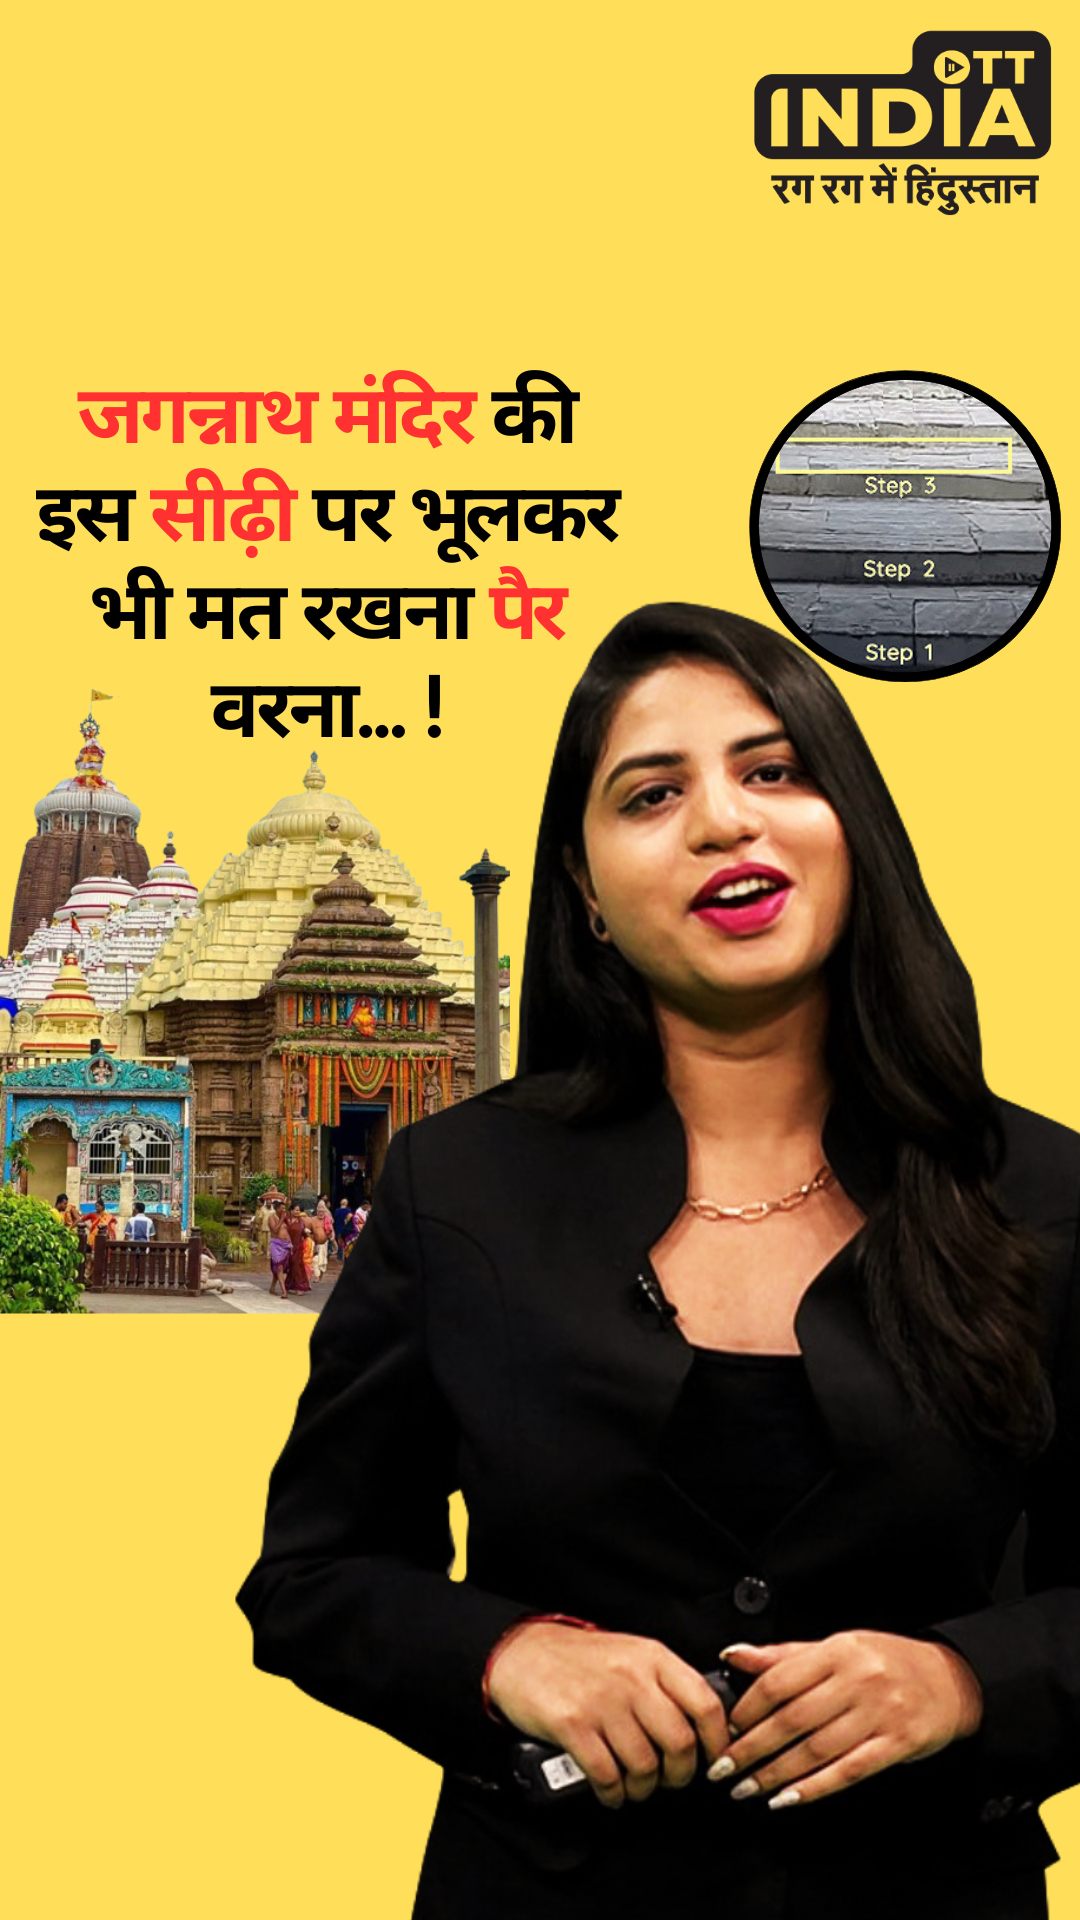 Jagannath Puri Temple Third Staircase Mystery: पुरी के जगन्नाथ मंदिर से निकलते हुए भूलकर भी तीसरी सीढ़ी पर पैर मत रख देना… ! Zara Hatke with Prerna